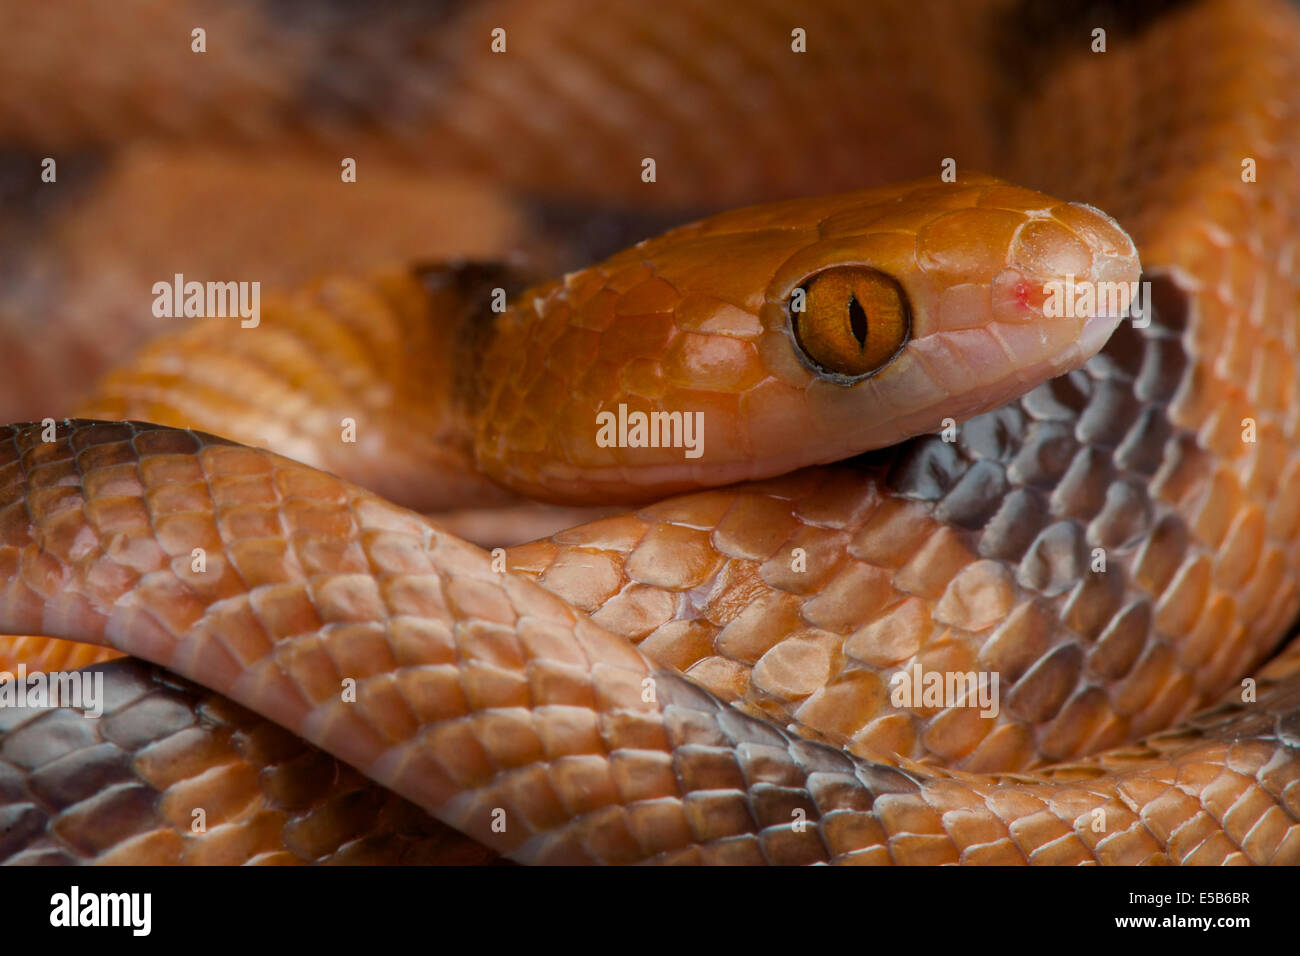 Cat eyed snake / Telescopus semiannulatus Foto Stock